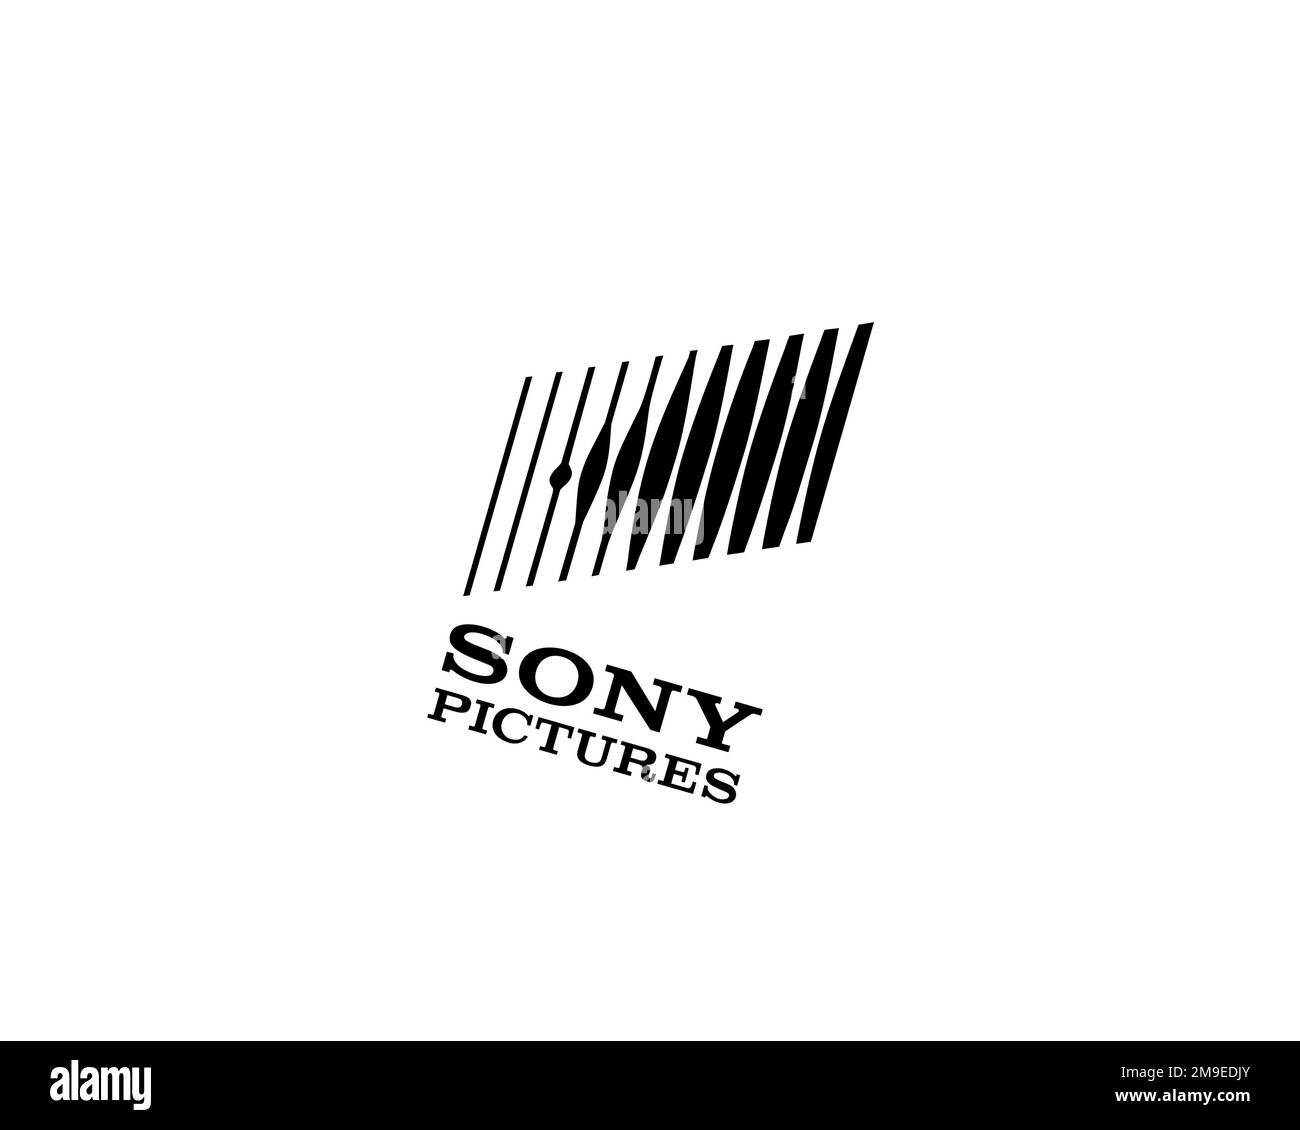 Sony Pictures, logo pivoté, arrière-plan blanc B Banque D'Images